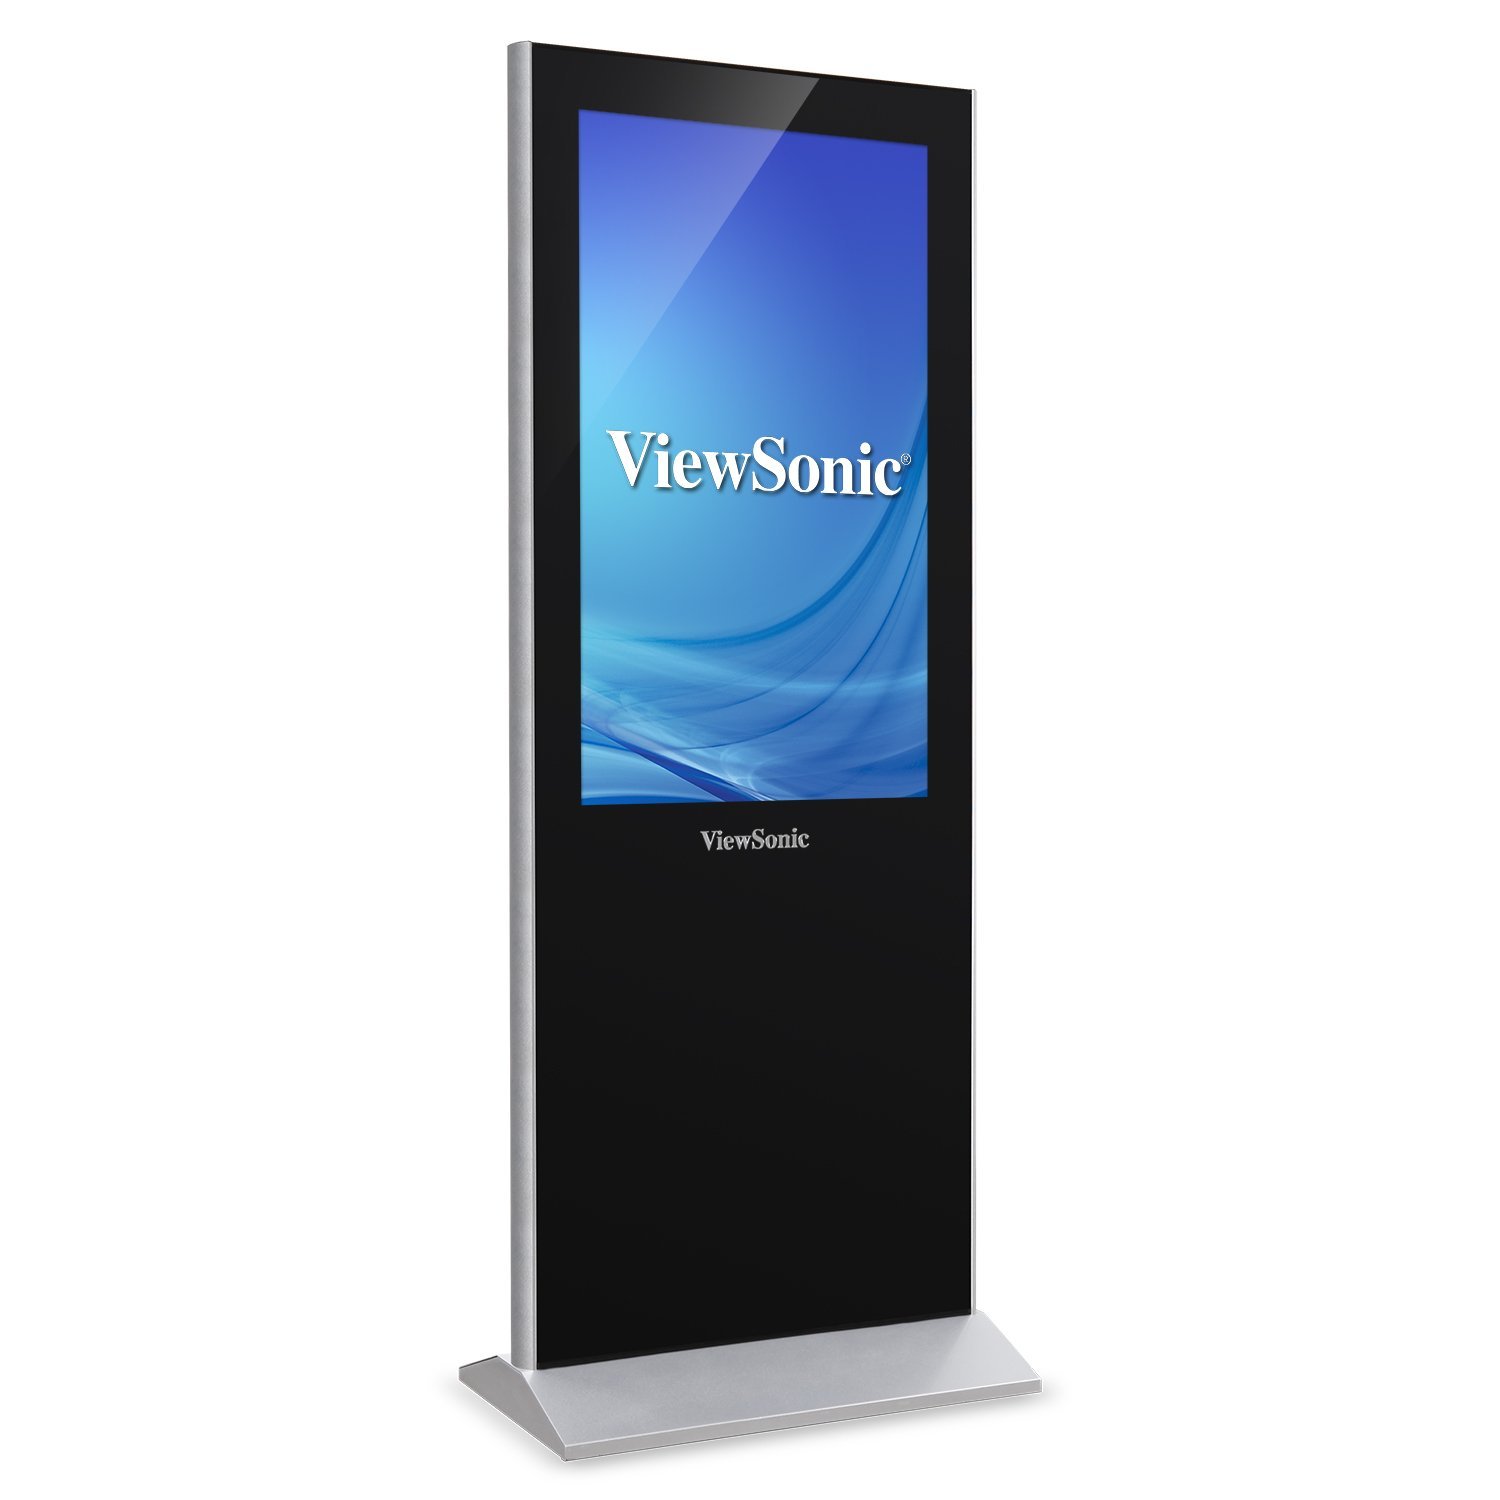 ViewSonic представляет новые дисплеи для киосков и цифровых вывесок